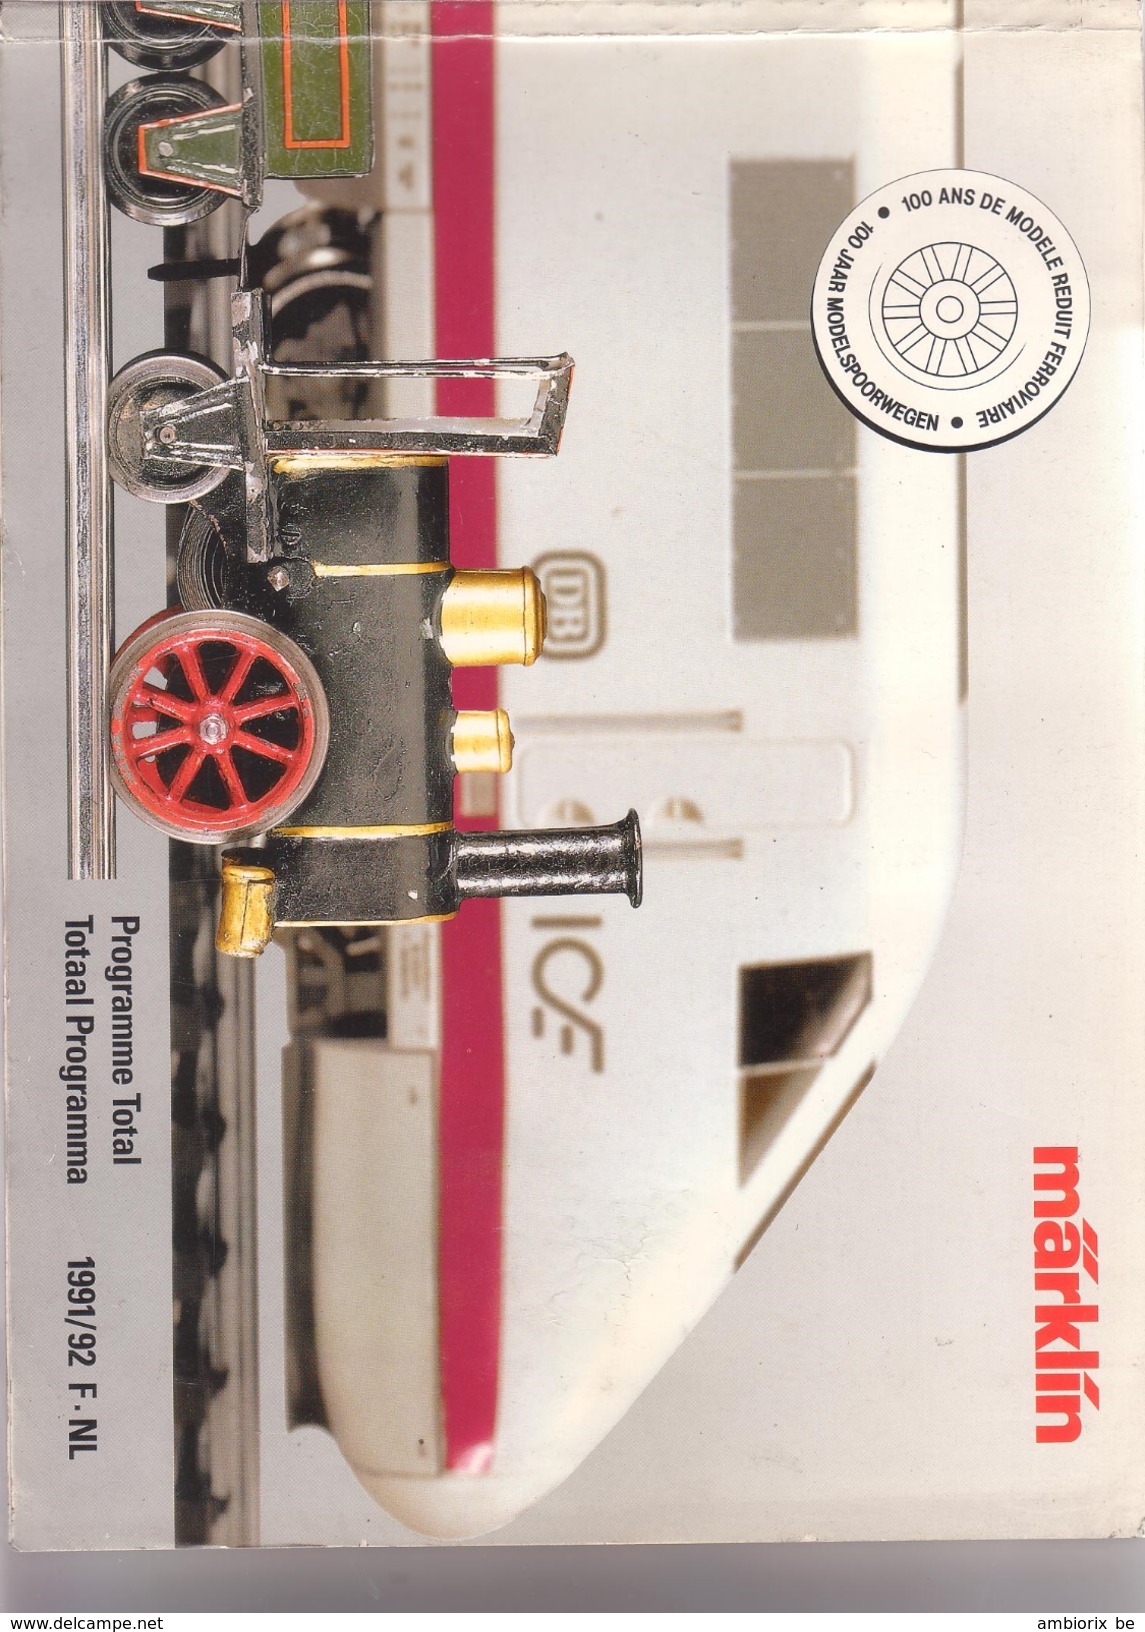 Marklin - Catalogue 1991-92 - French